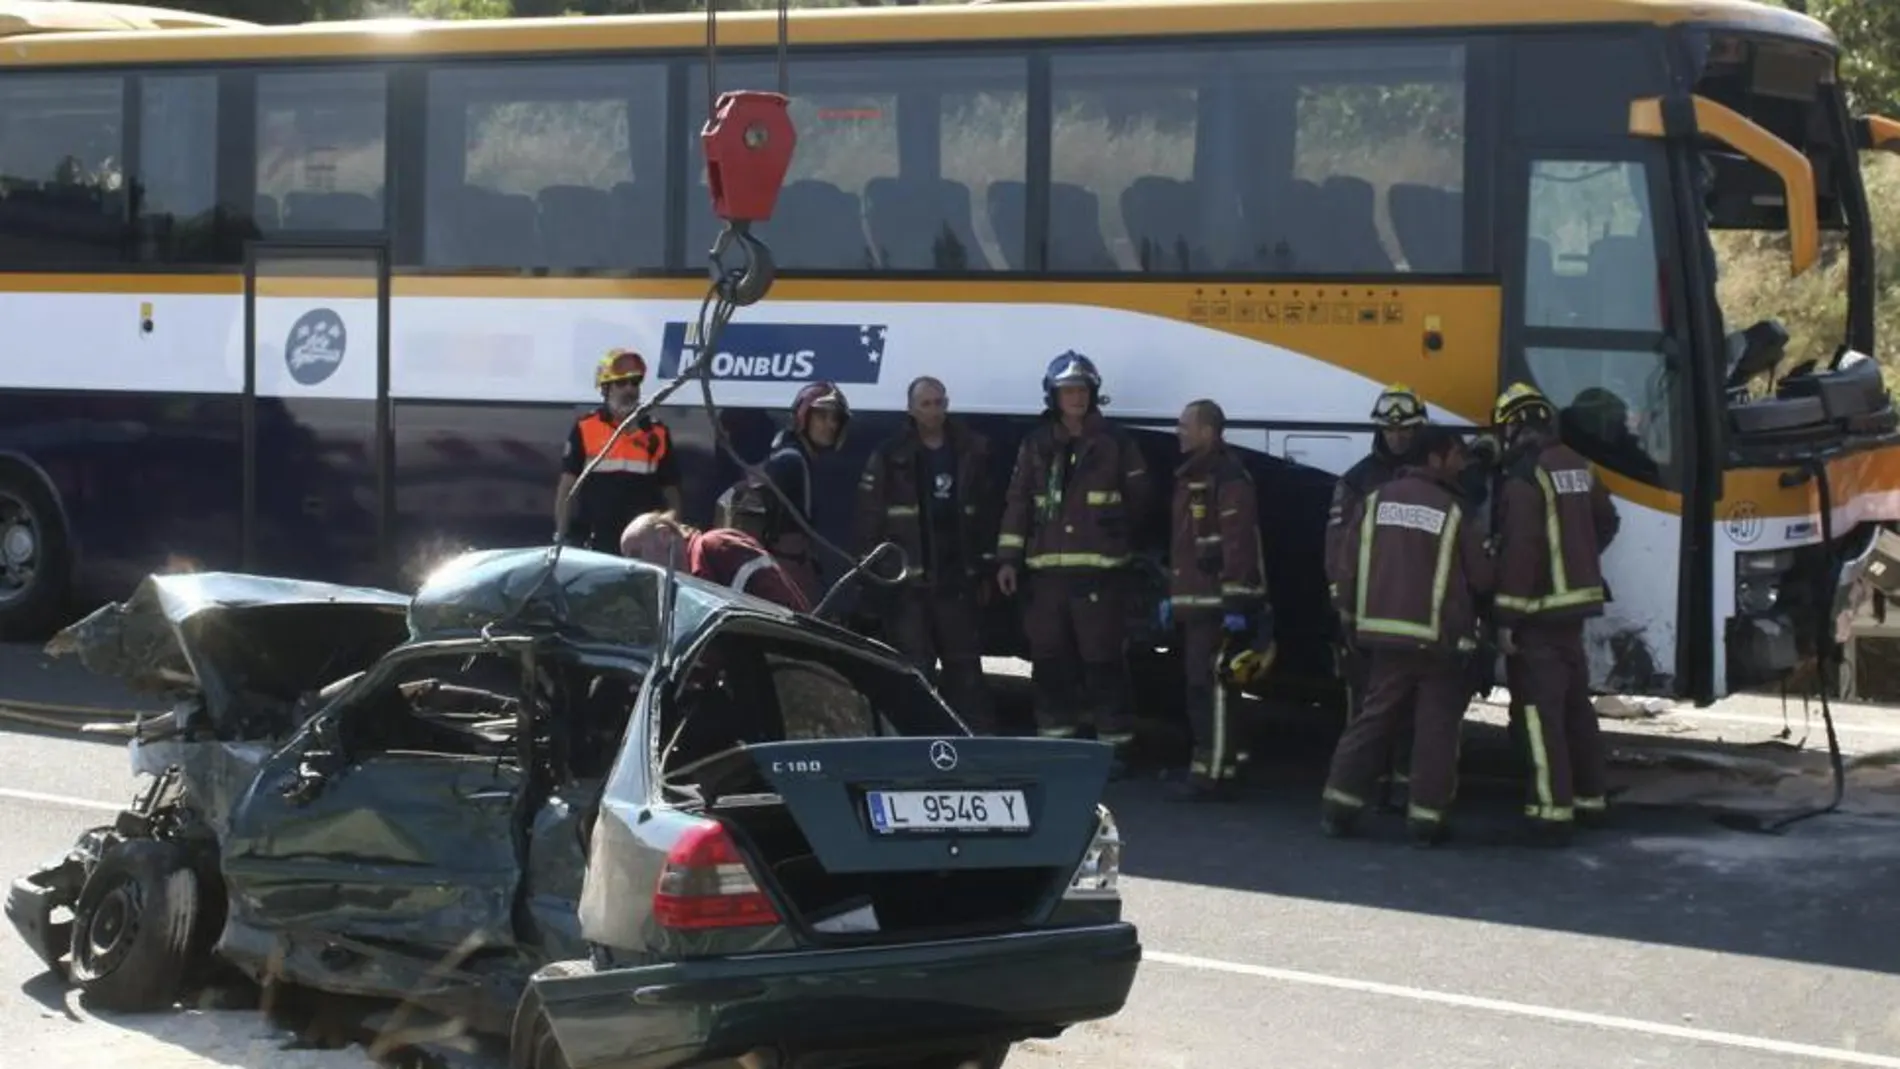 Los dos ocupantes de un turismo fallecieron el sábado en un accidente de tráfico en Alcover (Tarragona) al chocar su vehículo con un autocar